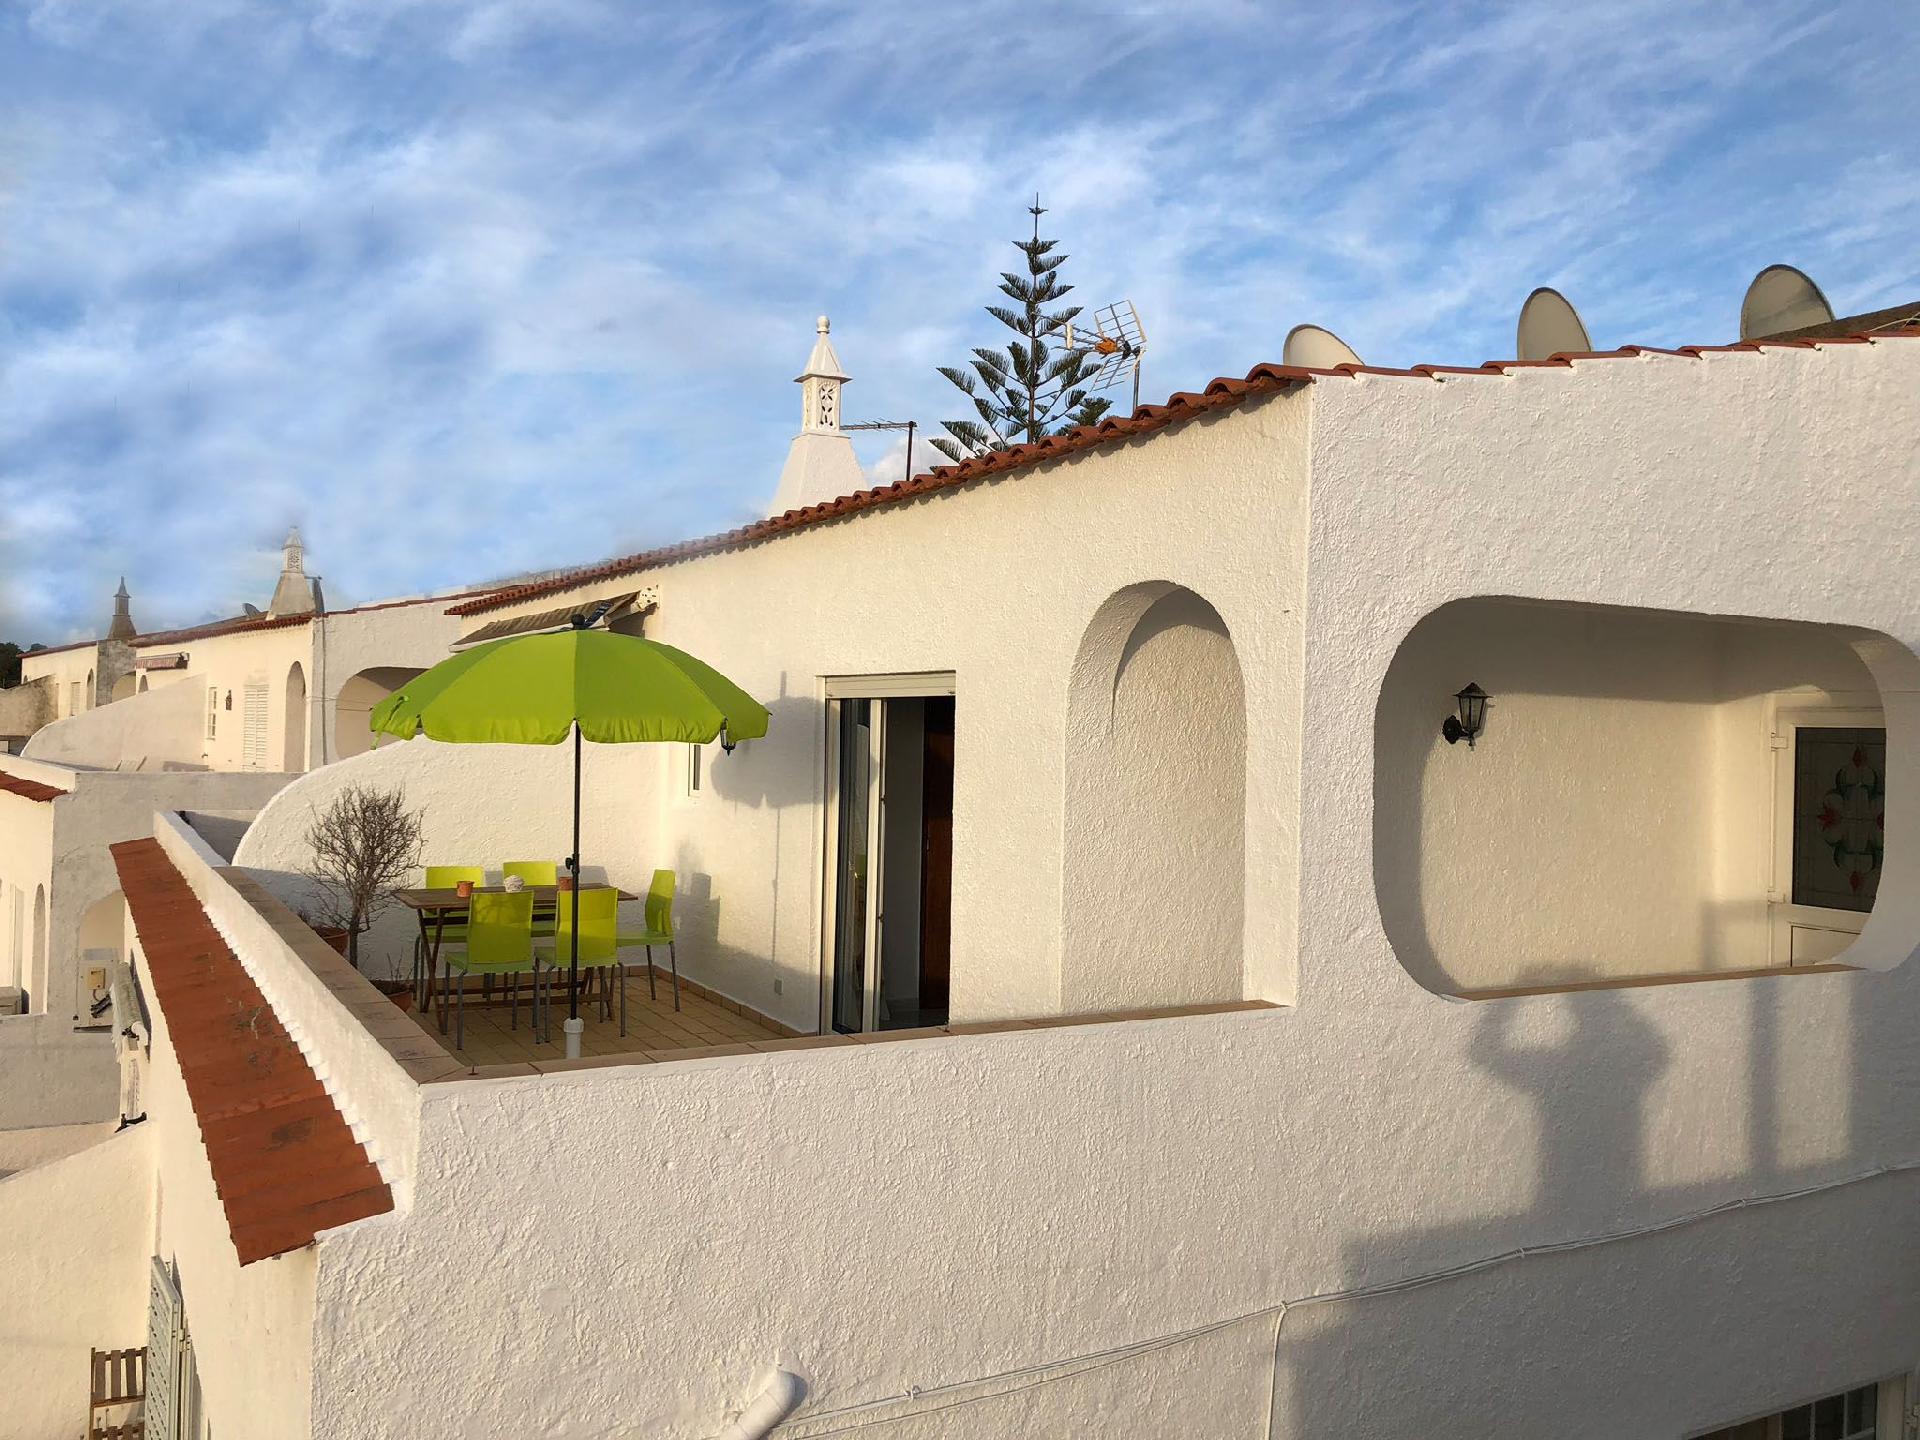 Ferienwohnung für 4 Personen ca. 92 m² i Ferienwohnung in Portugal